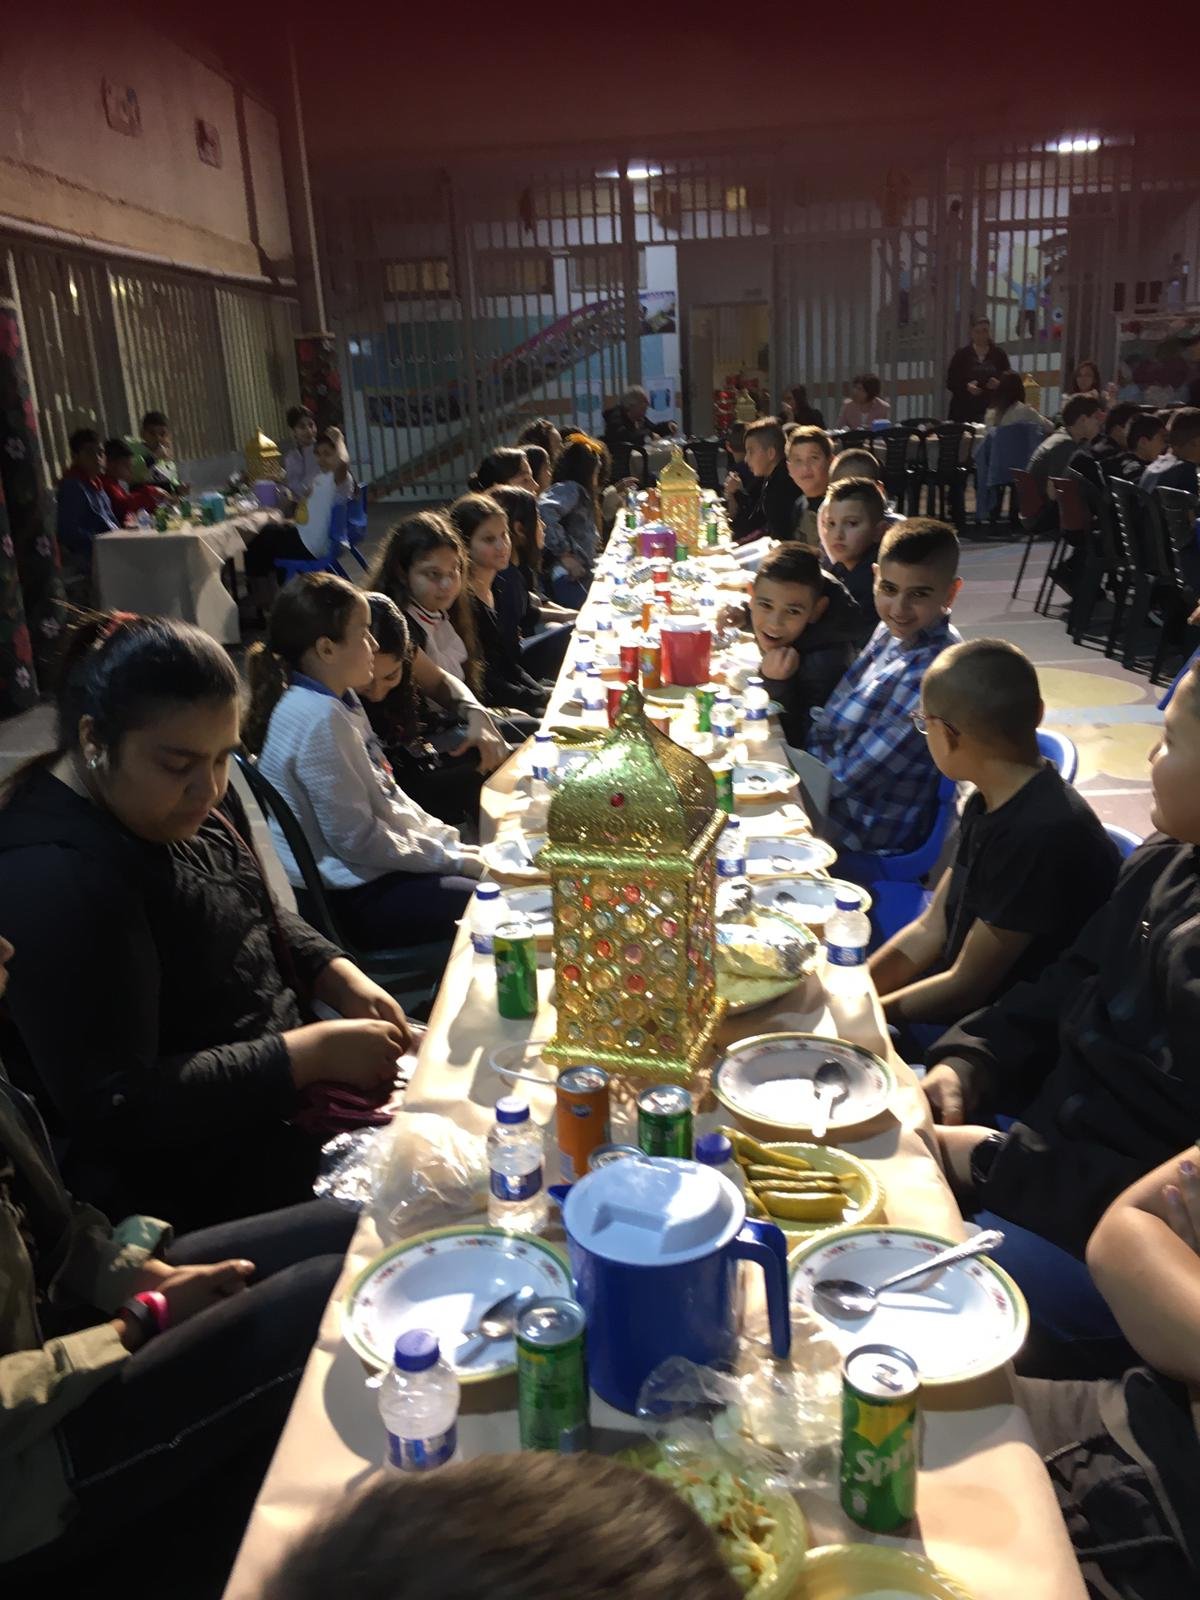 أمسية رمضانية تُعيد النكهة لطقوس وروحانيات الشهر الفضيل في المدرسة الجماهيريّة بئر الأمير-الناصرة-6